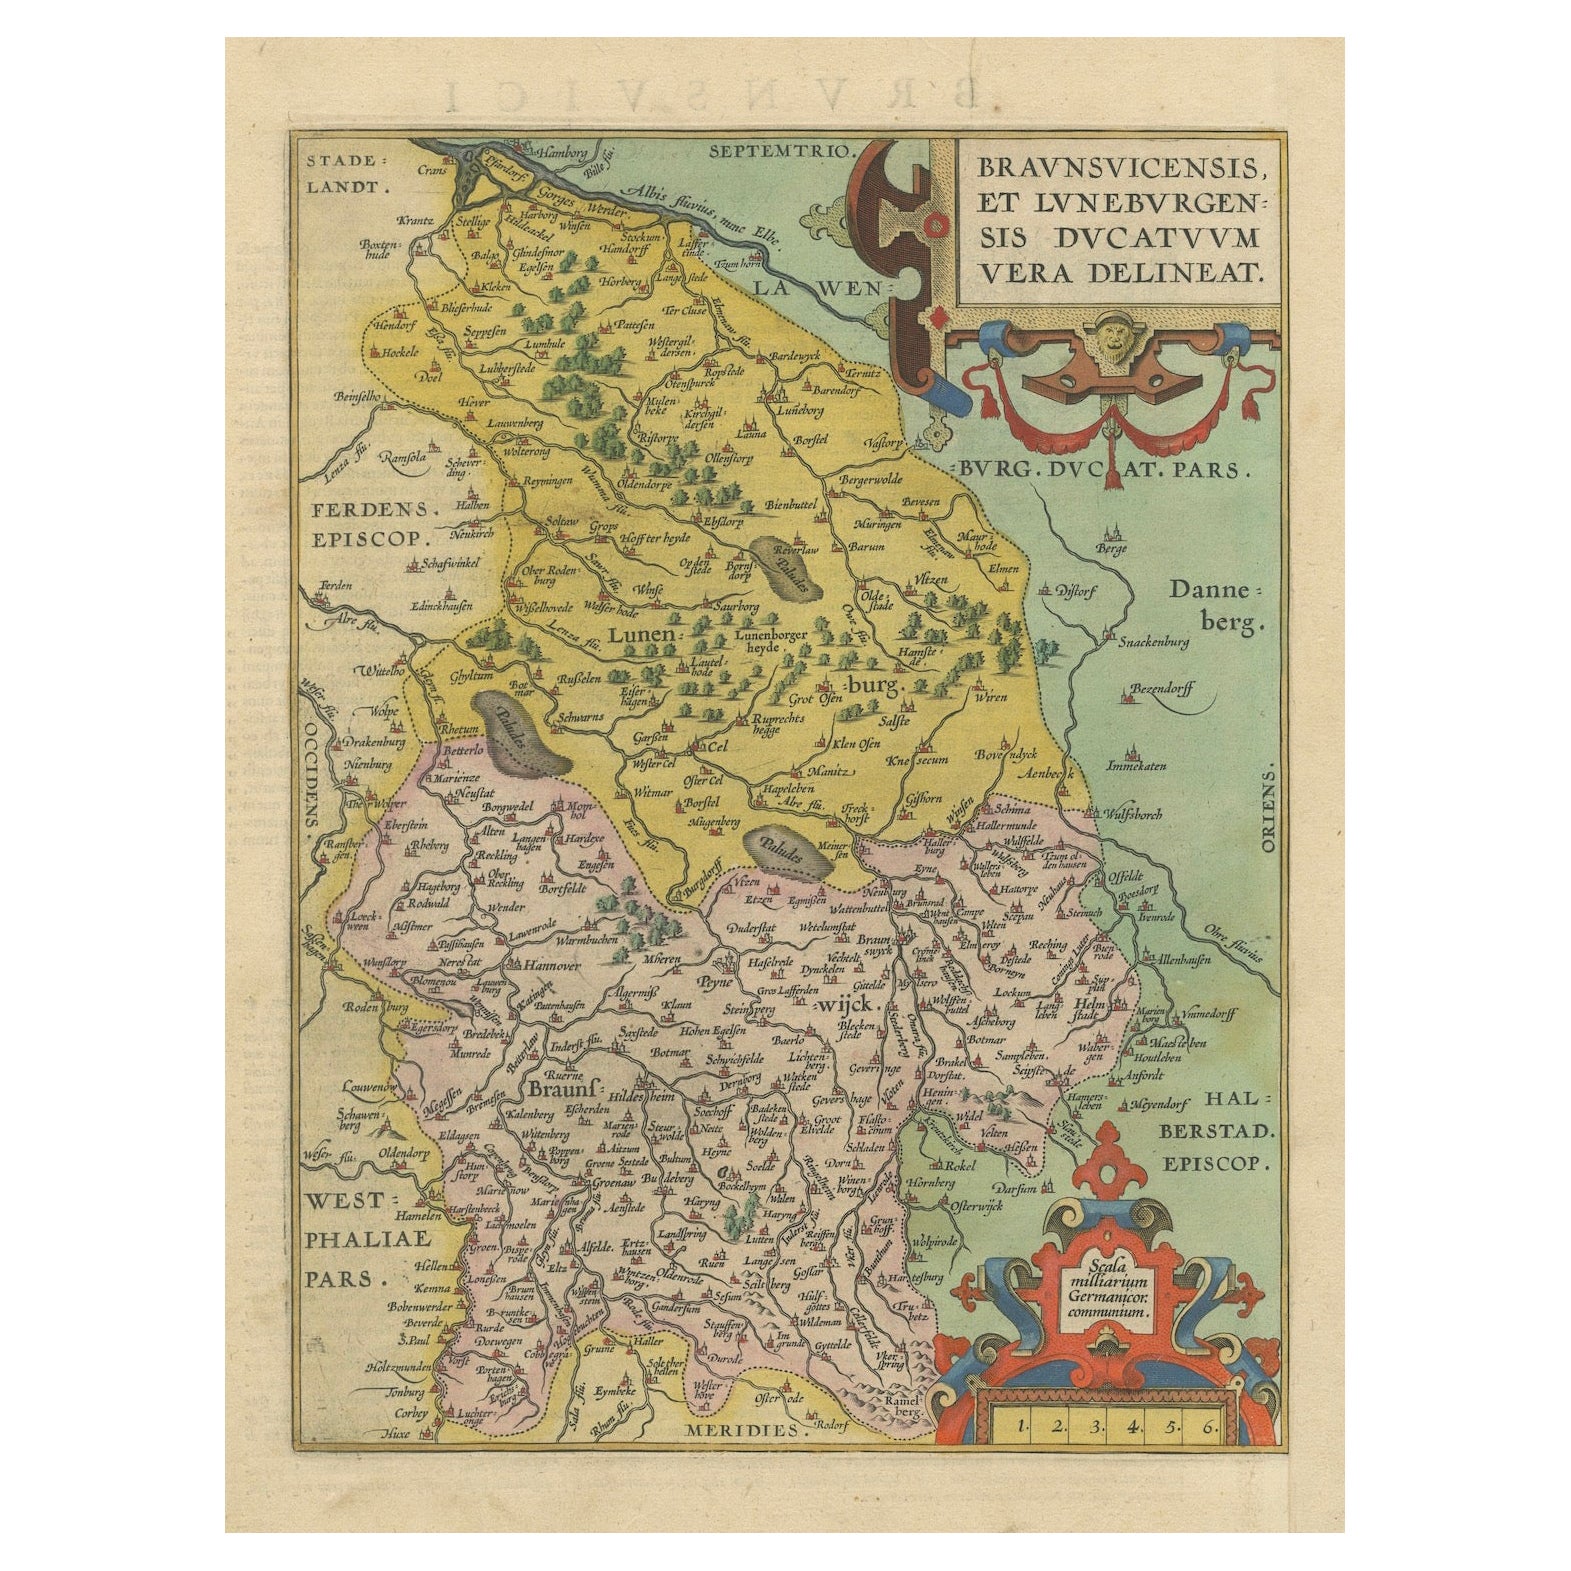 Duché de Brunswick-Lüneburg, 1595 : Un chef-d'œuvre cartographique de la Renaissance